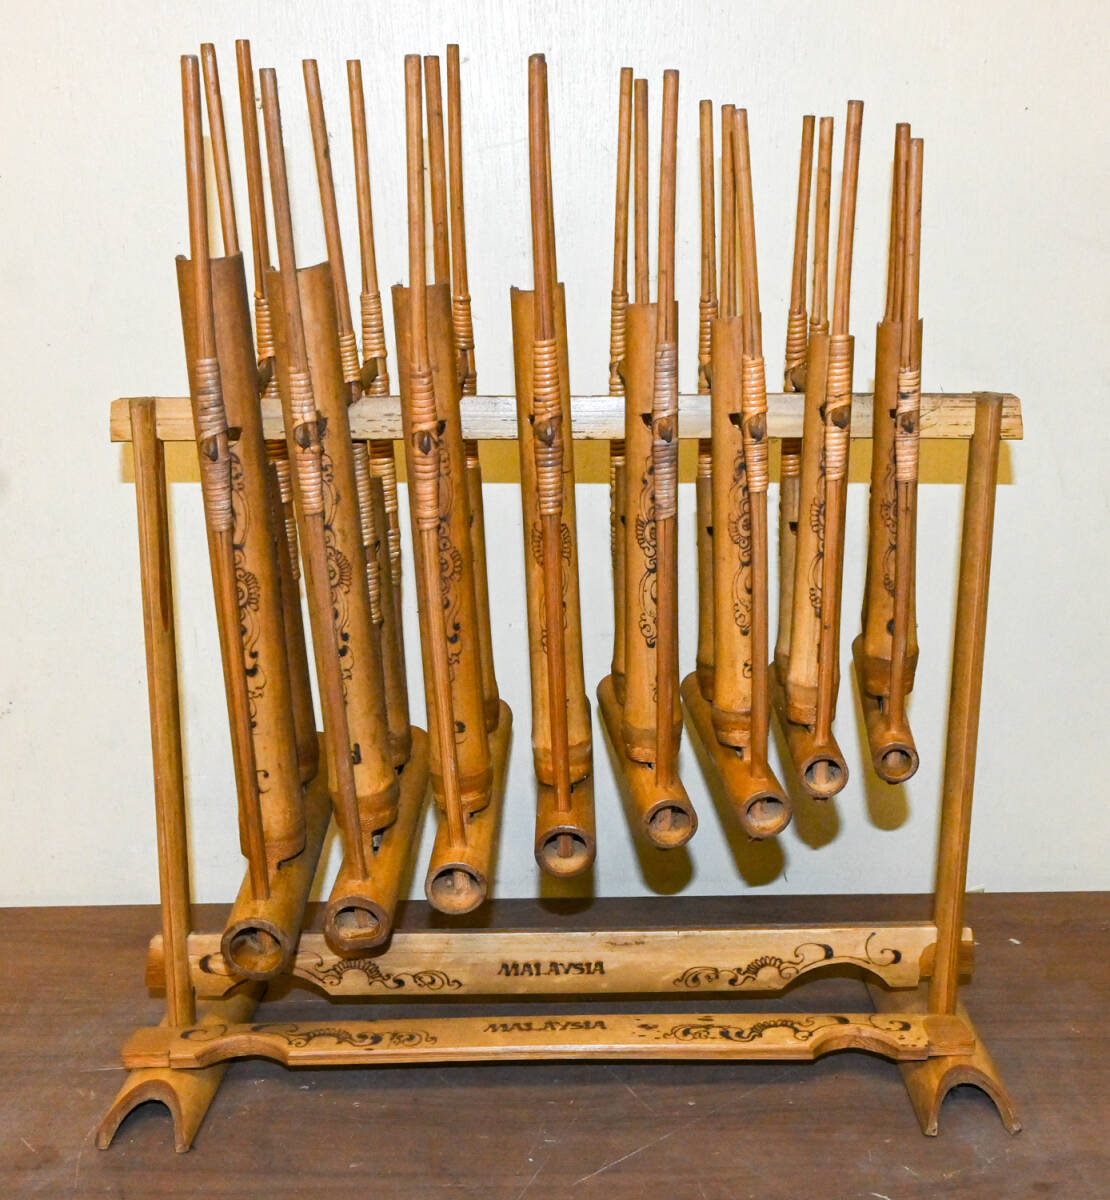 アンクルン / Angklung マレーシア 竹楽器 ユネスコ無形文化遺産 幅約40cm 高さ約45cm 奥行概19cm_画像1